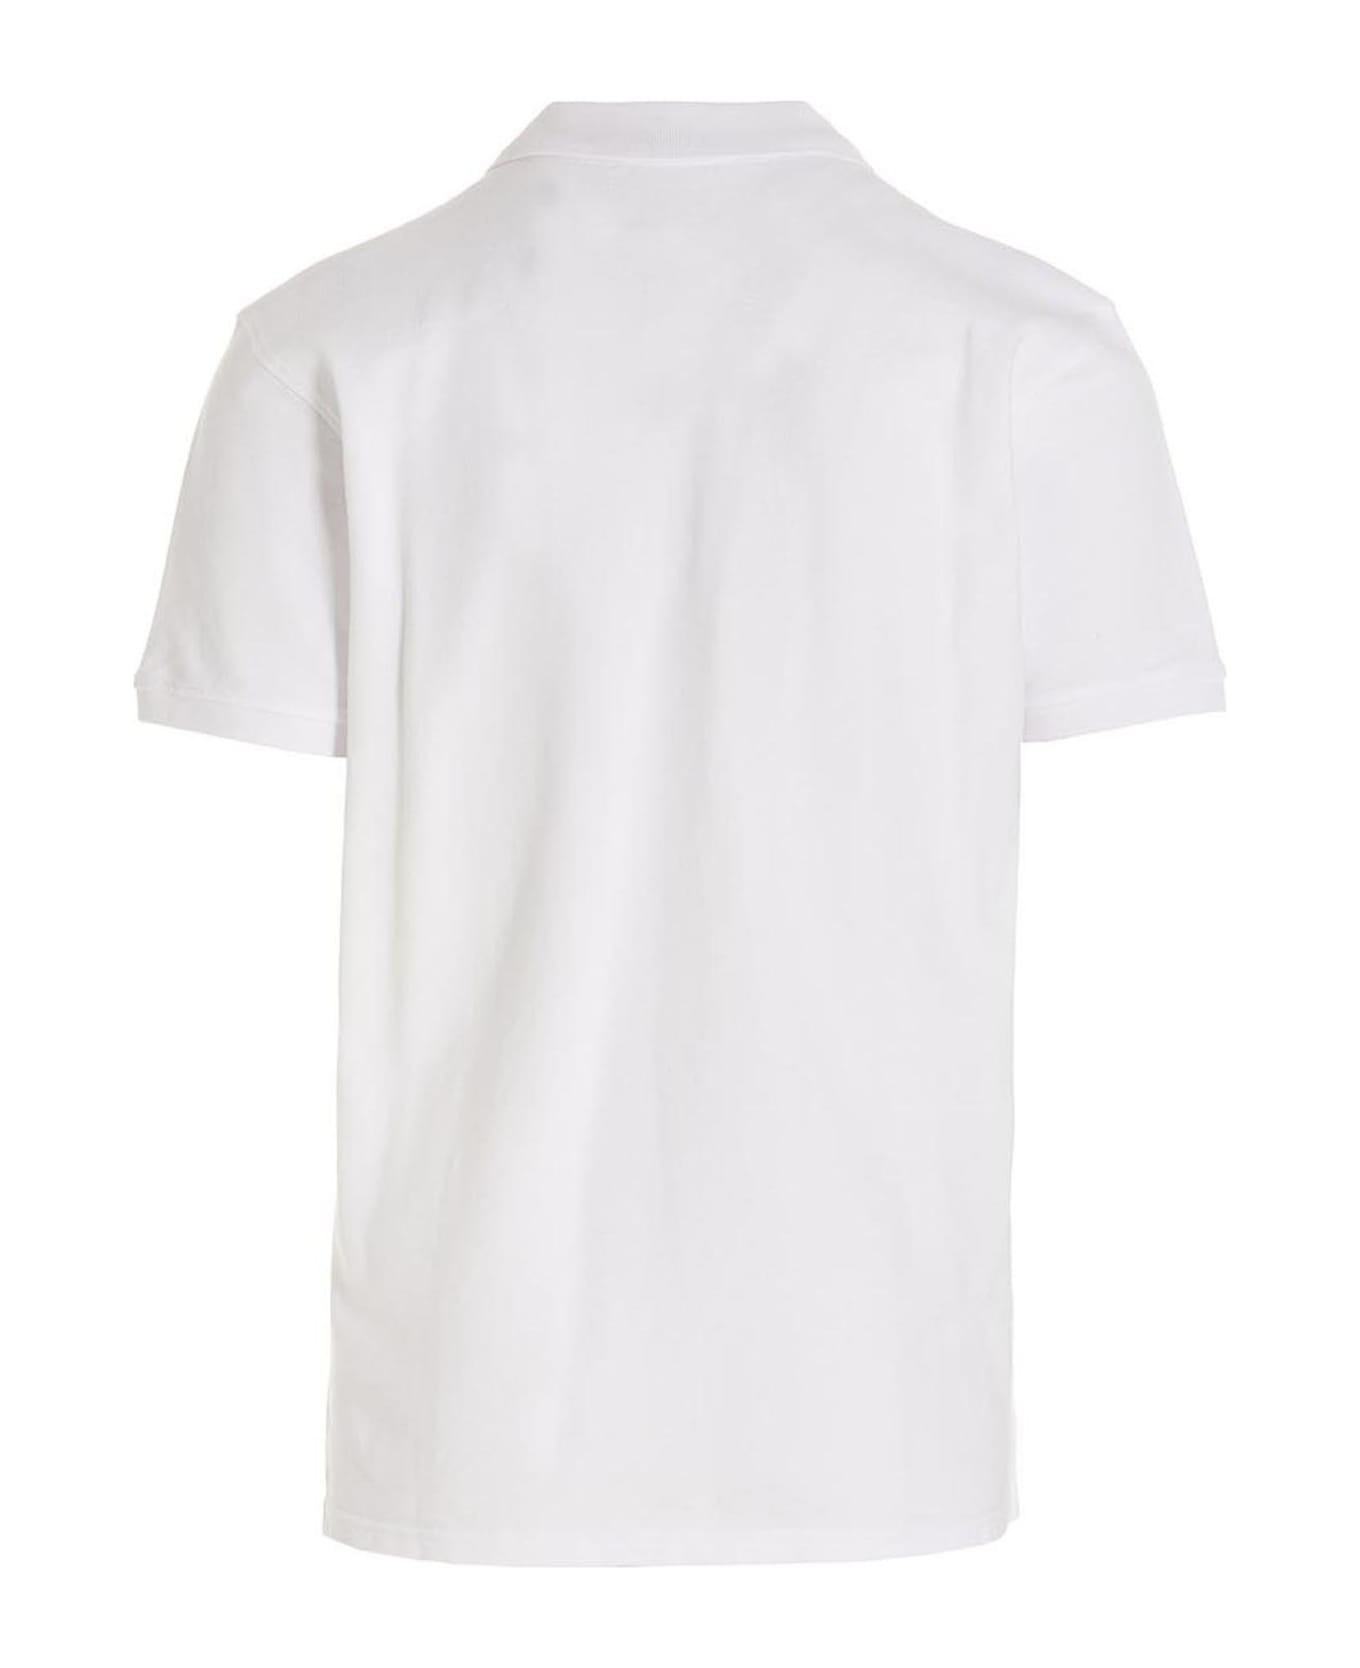 Kenzo 'kenzo Paris' Polo Shirt - White